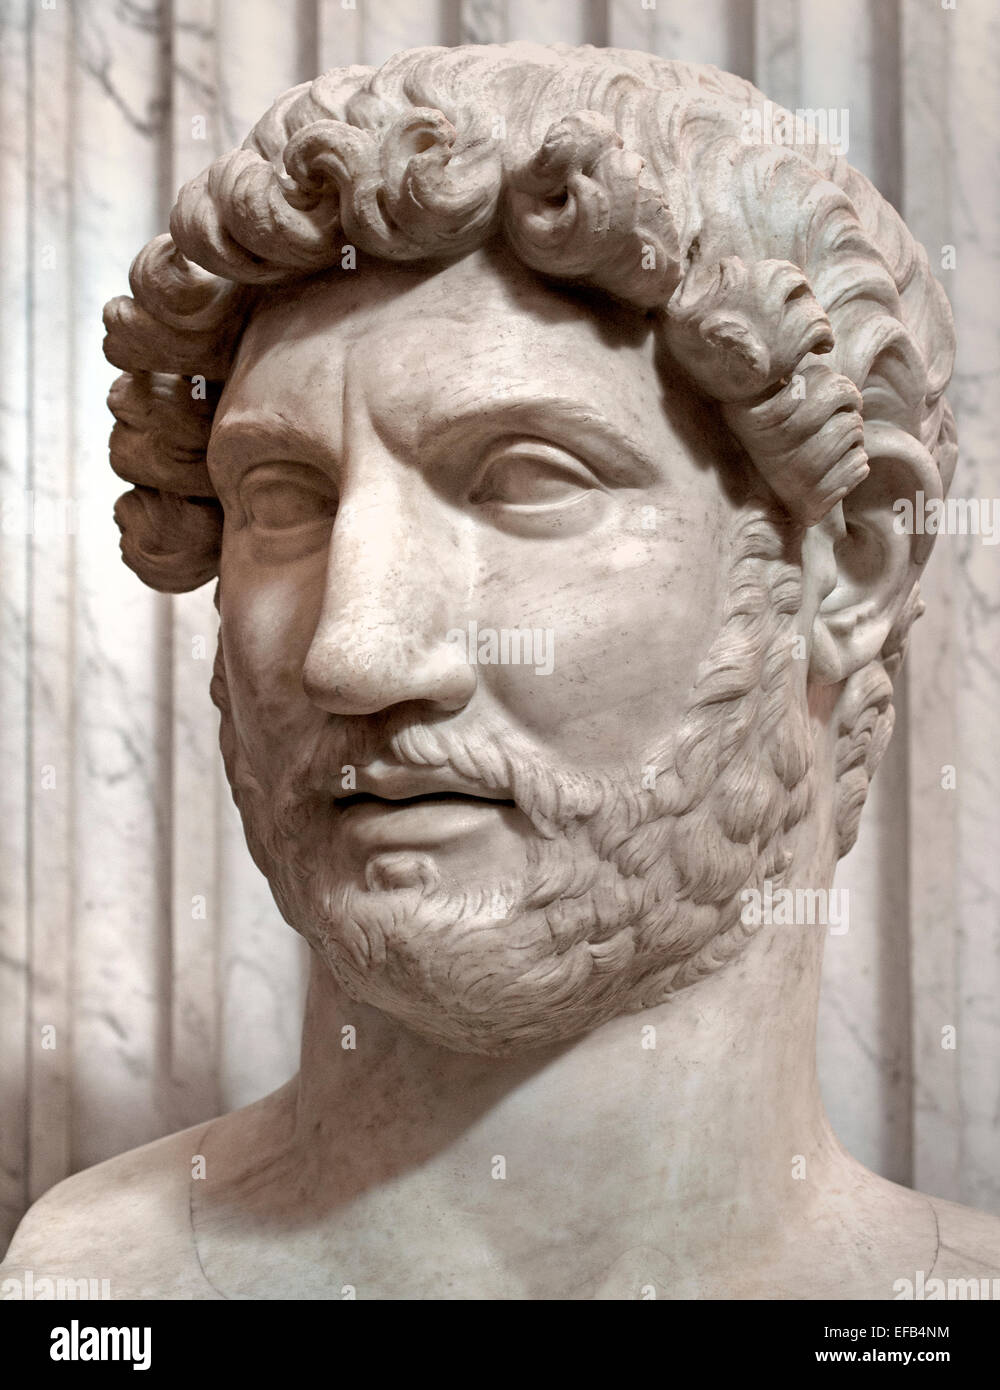 Buste de l'empereur Hadrien, du mausolée d'Hadrien, peut-être créé après la mort de l'empereur en 138 AD ( Musée du Vatican Rome Italie ) Banque D'Images